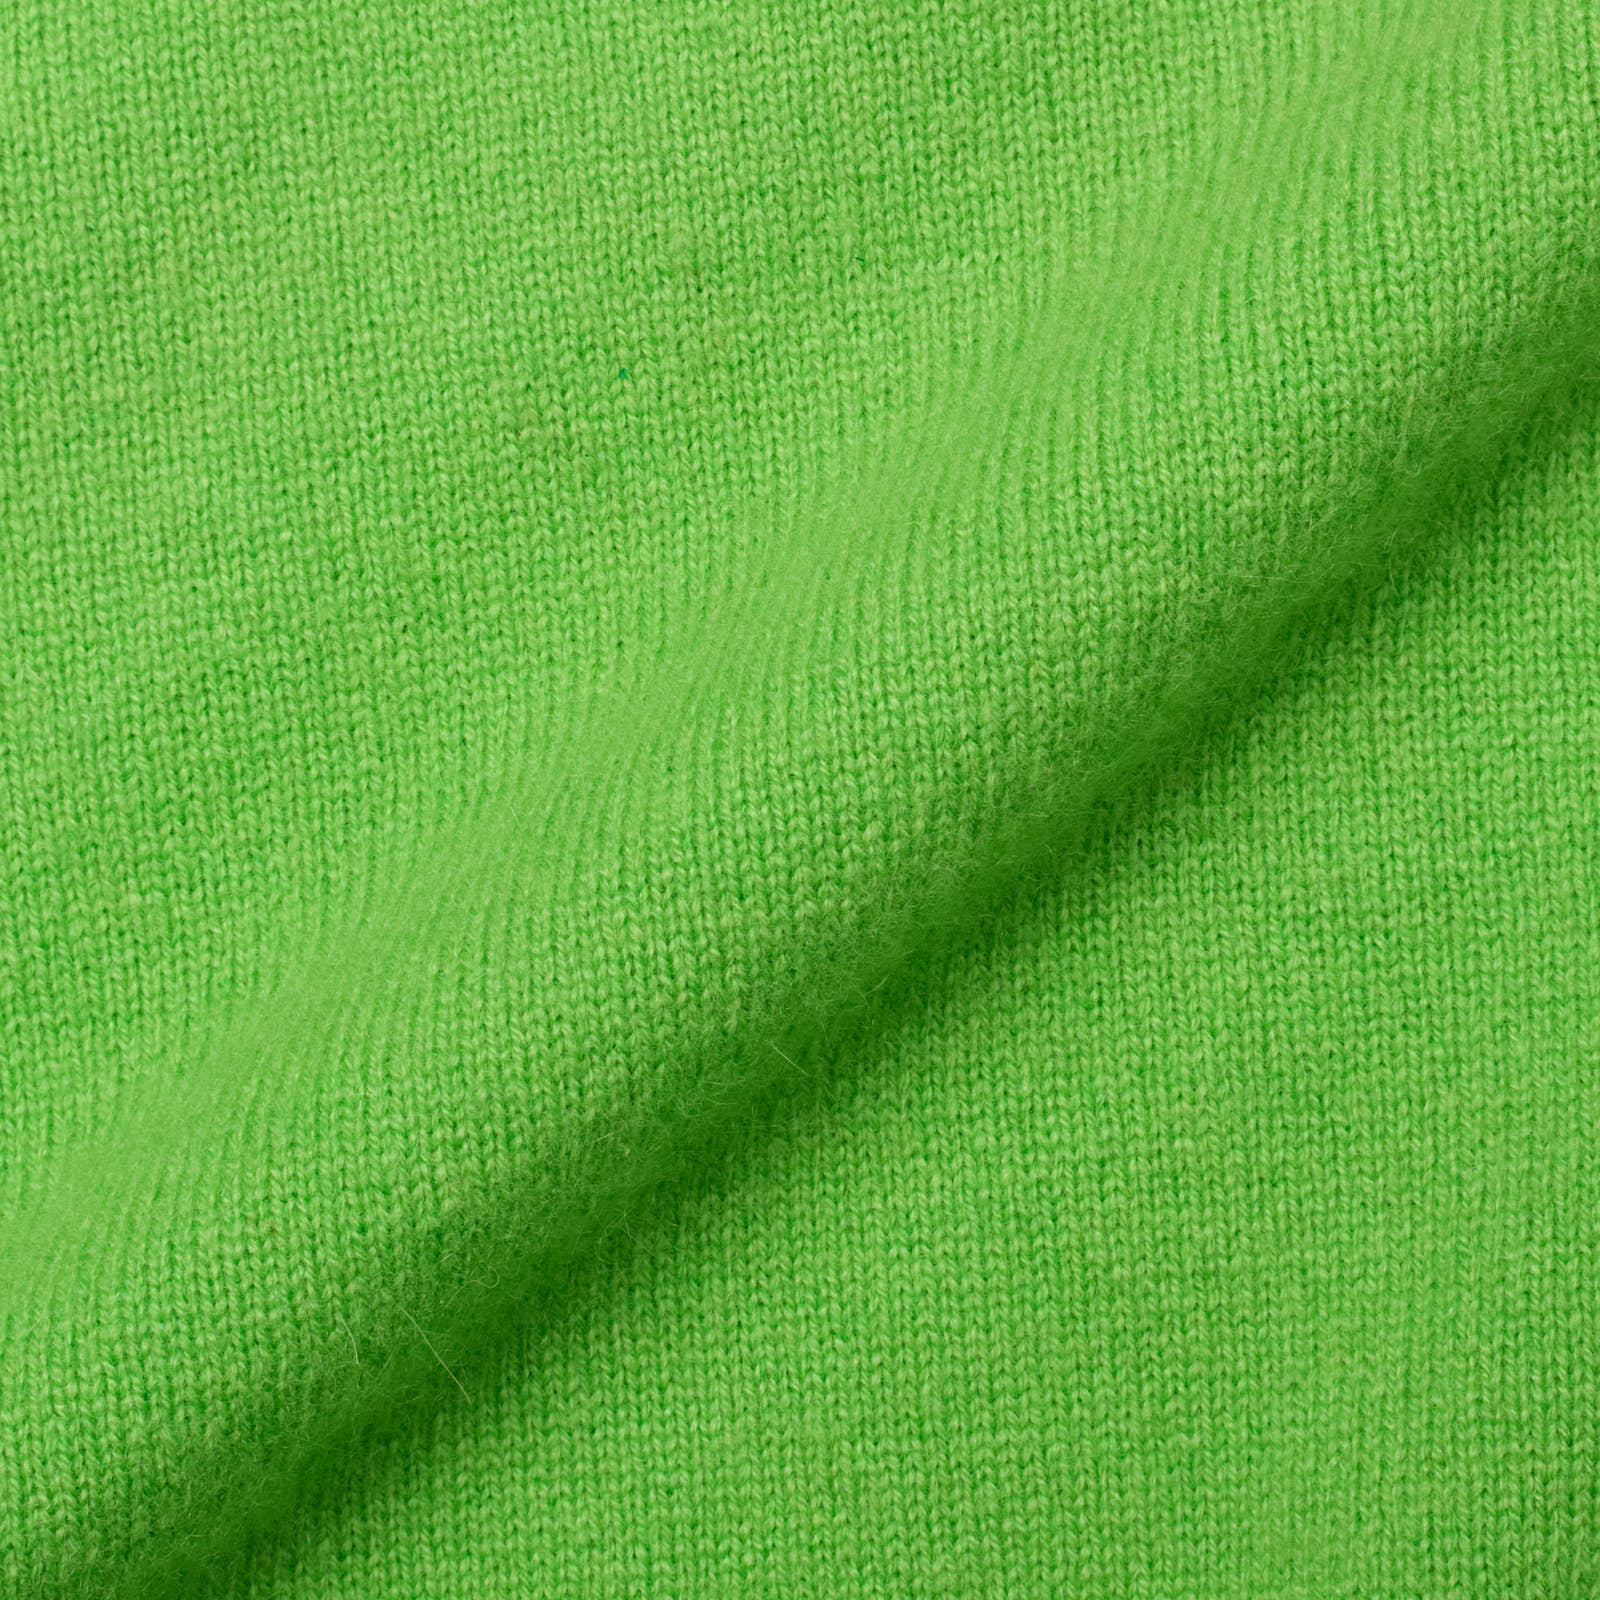 DELLA CIANA for VANNUCCI Green Cashmere Knit Sweater Vest EU 50 NEW US M